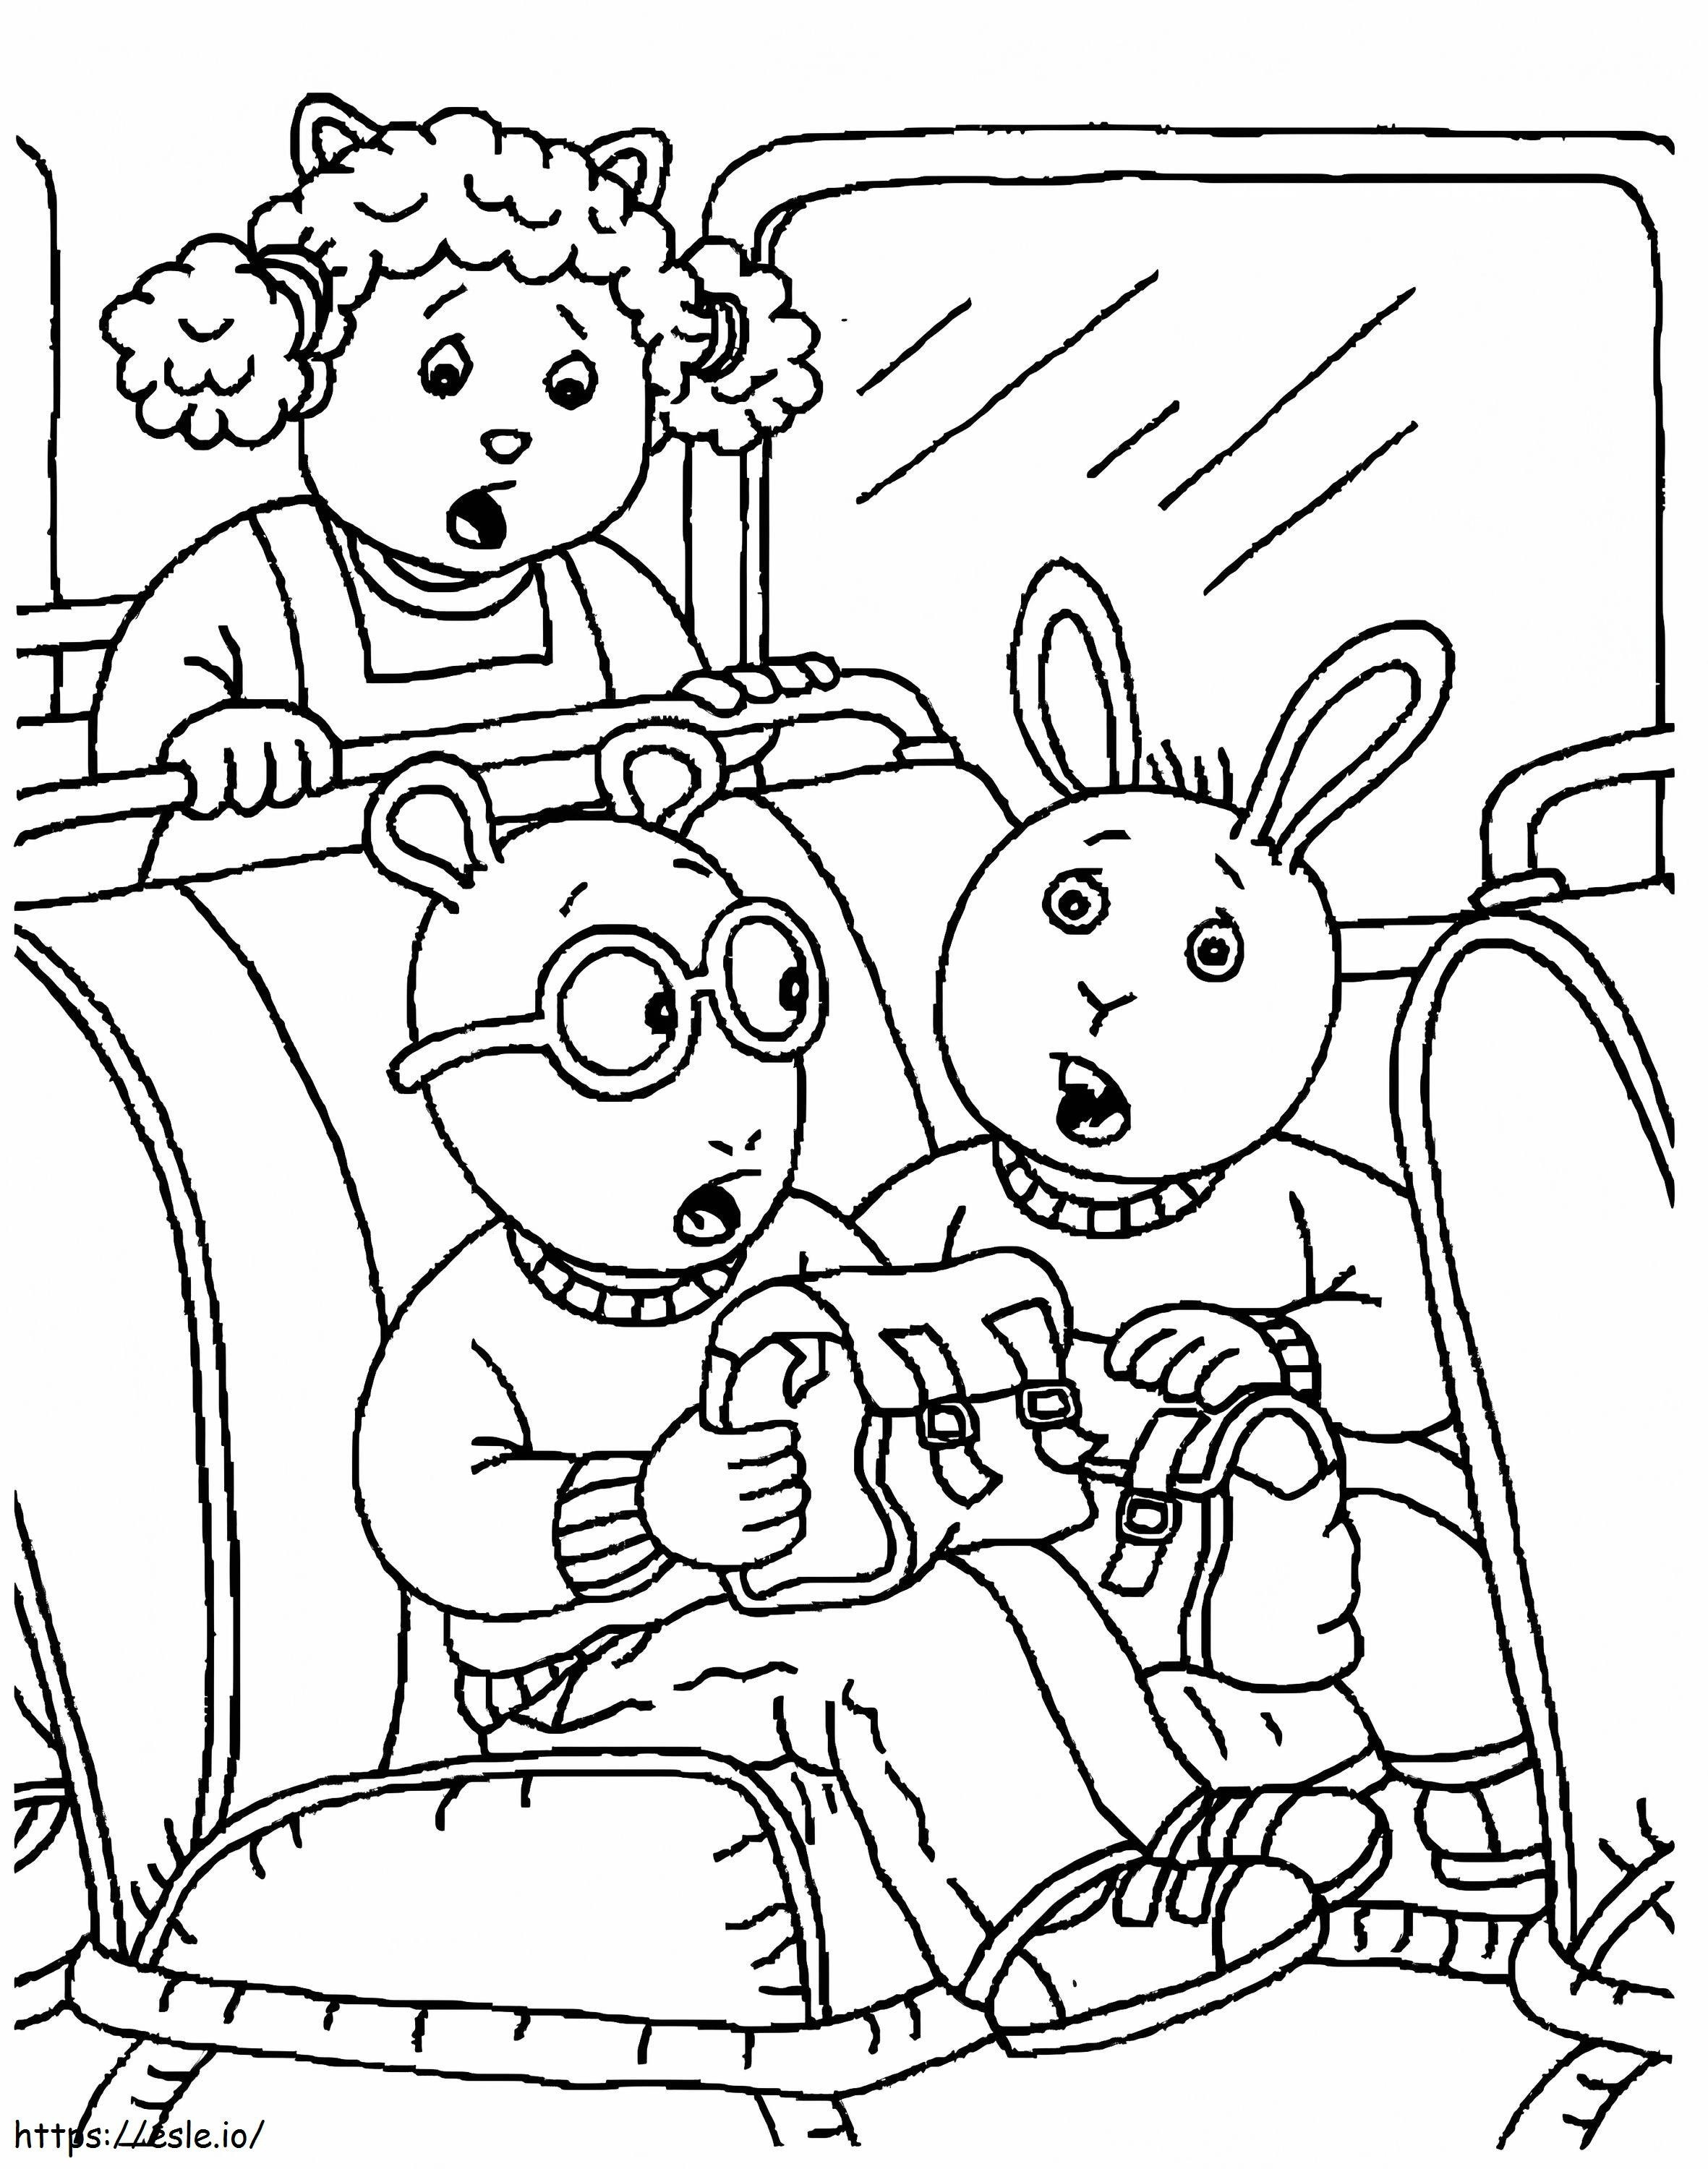 Arthur liest im Bus ausmalbilder